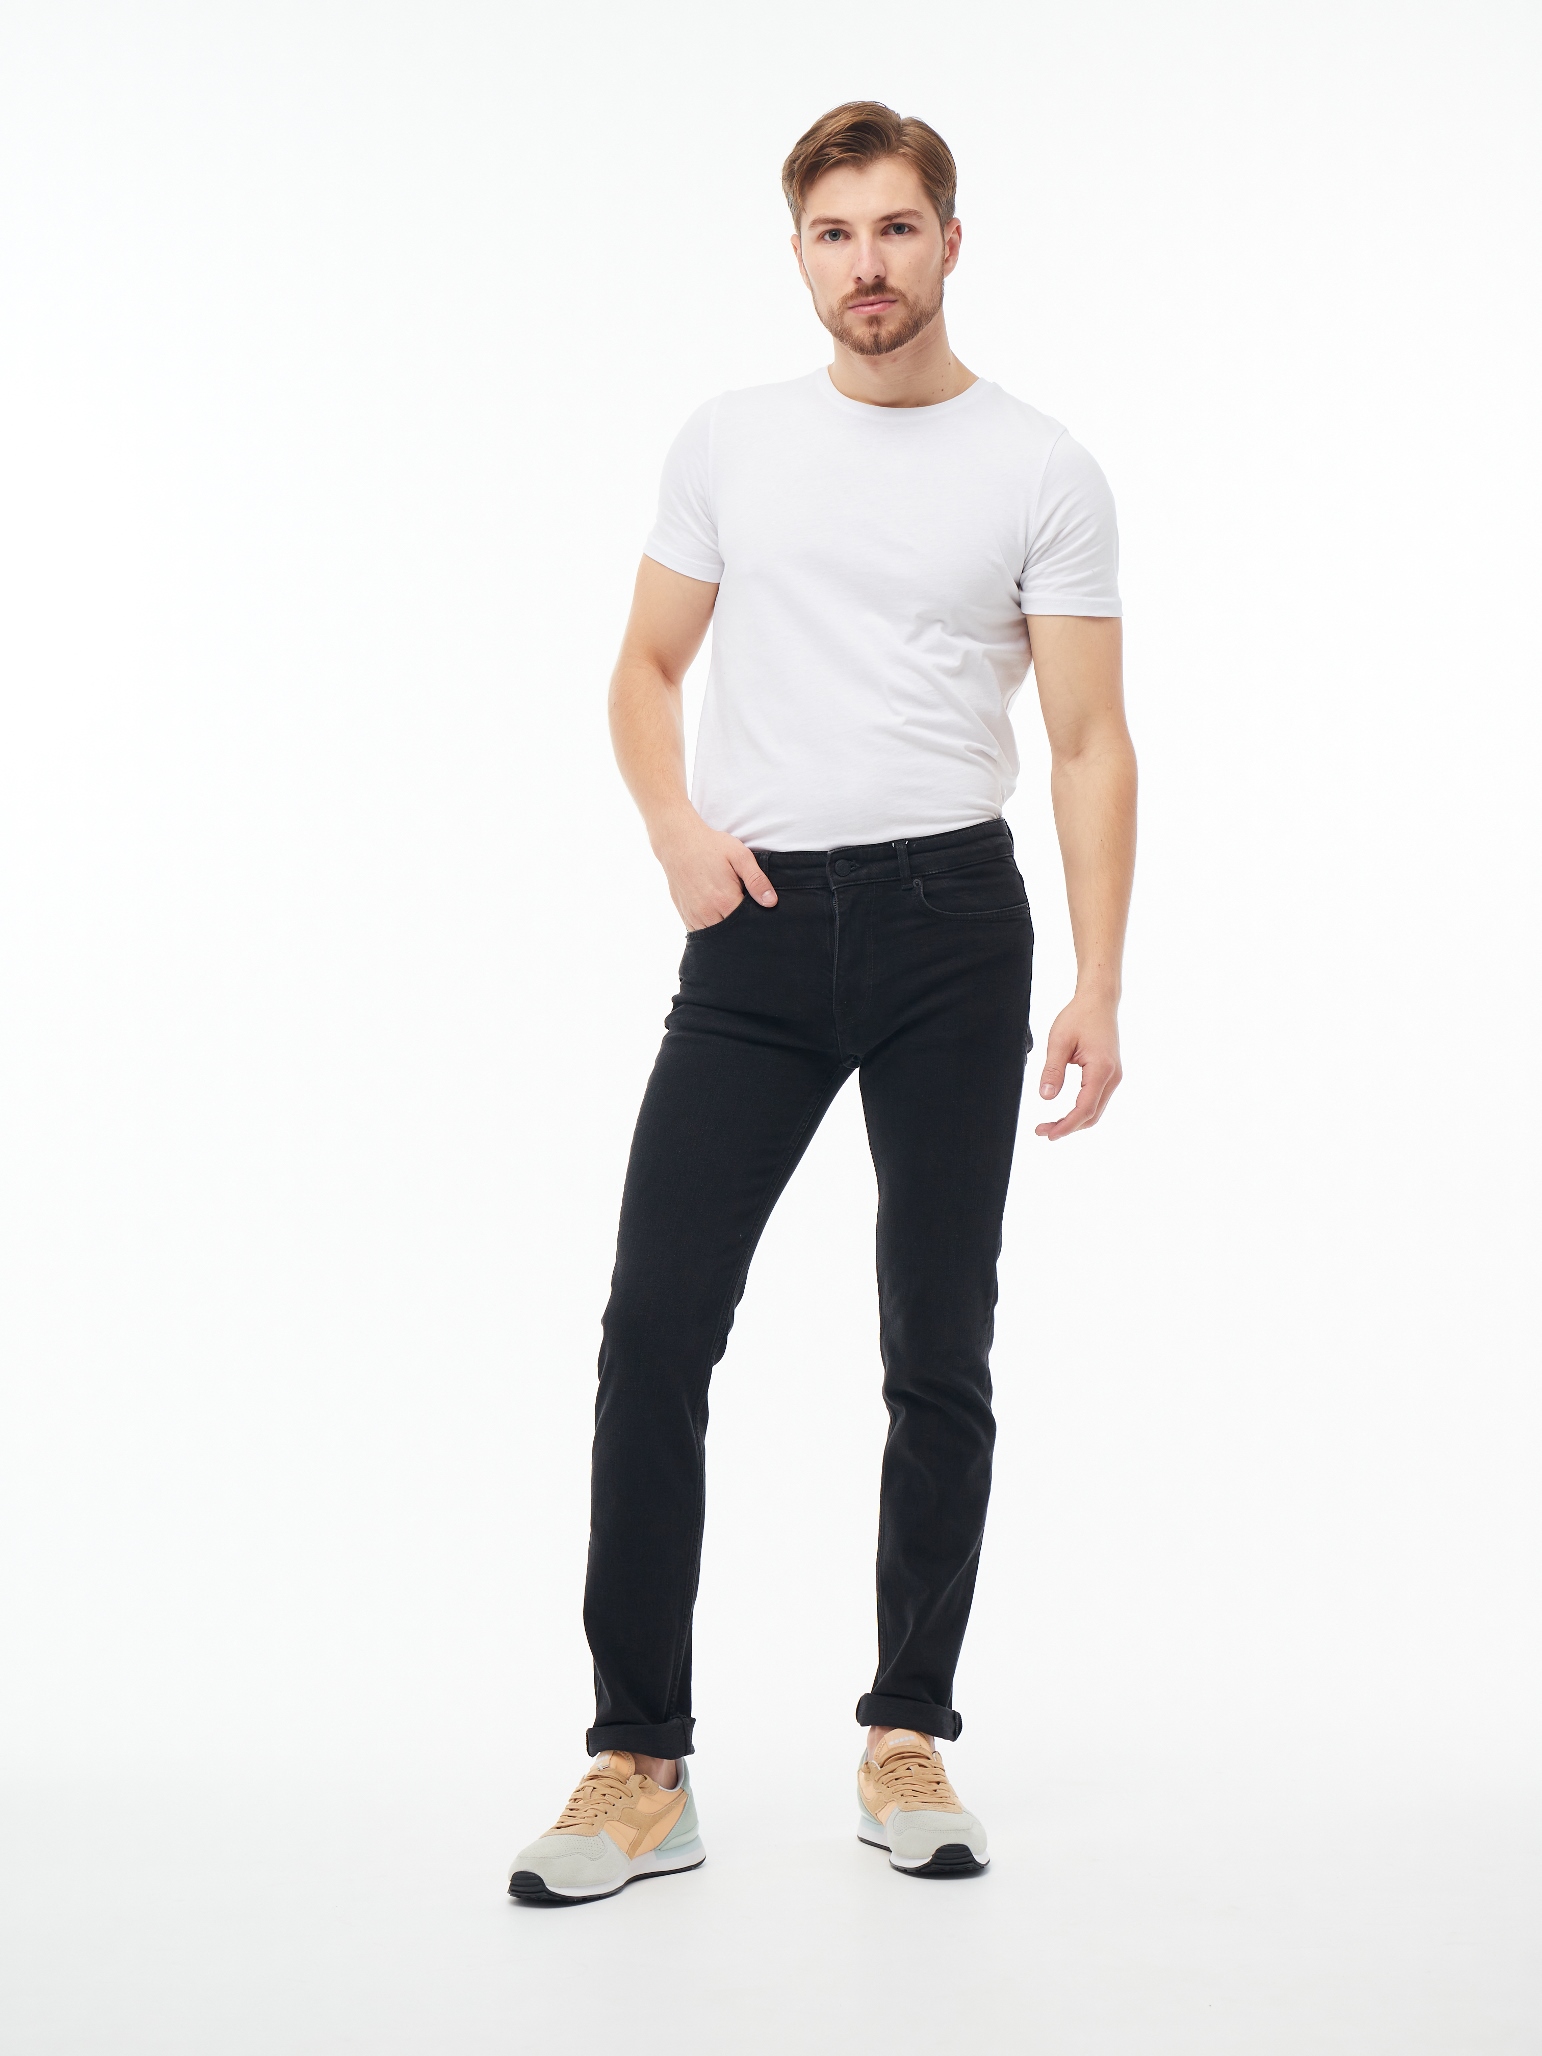 Чоловічі джинси Slim Fit Nils 1073 | Men's jeans Slim Fit Nils 1073